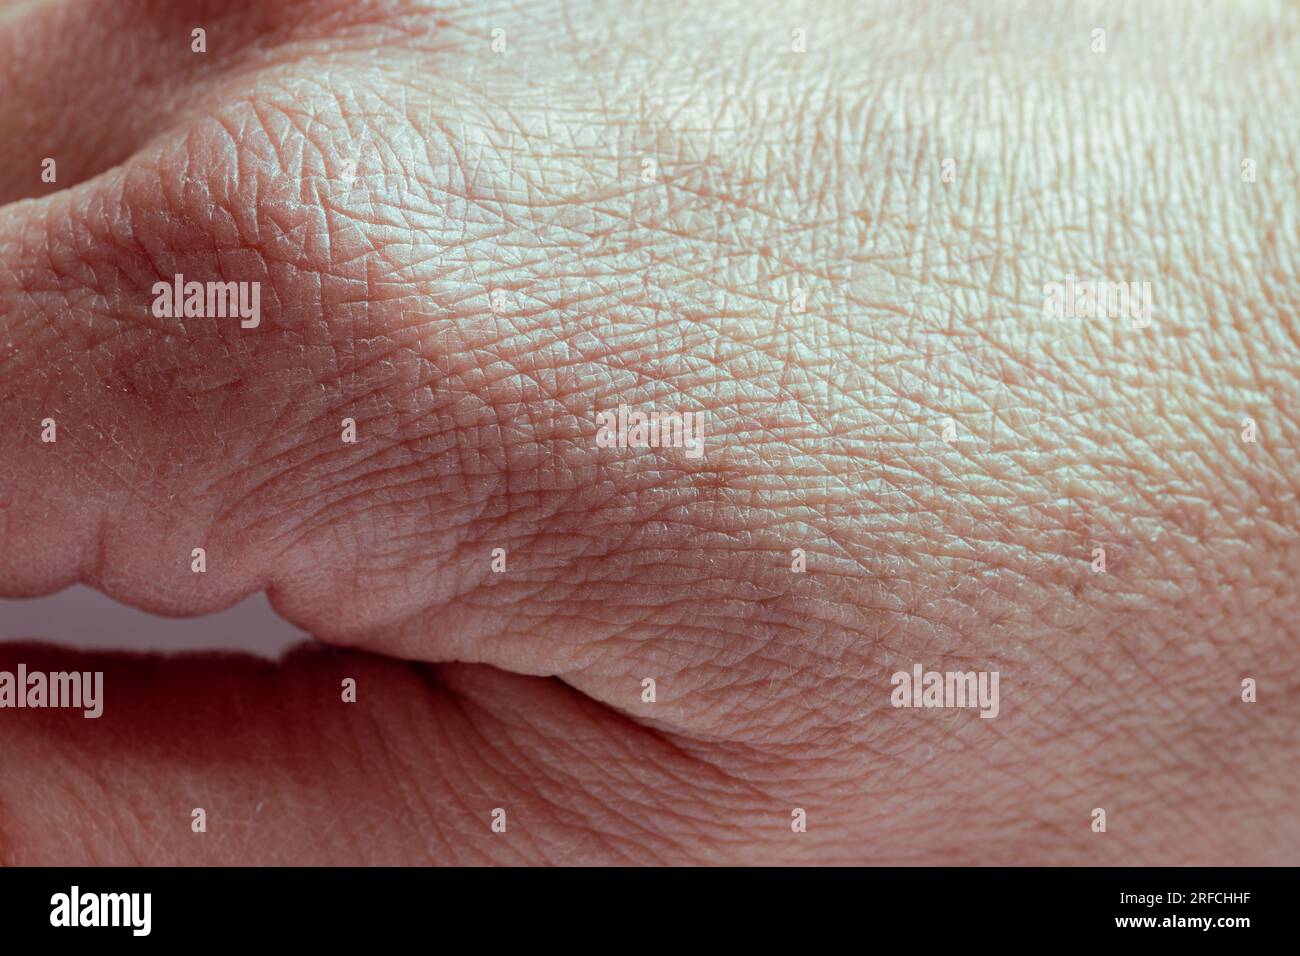 Nahaufnahme der zerknitterten Haut an der Hand eines älteren Mannes mit einigen Läsionen aktinischer Keratose oder Sonnenflecken. Die Konsistenz der menschlichen Haut. Stockfoto